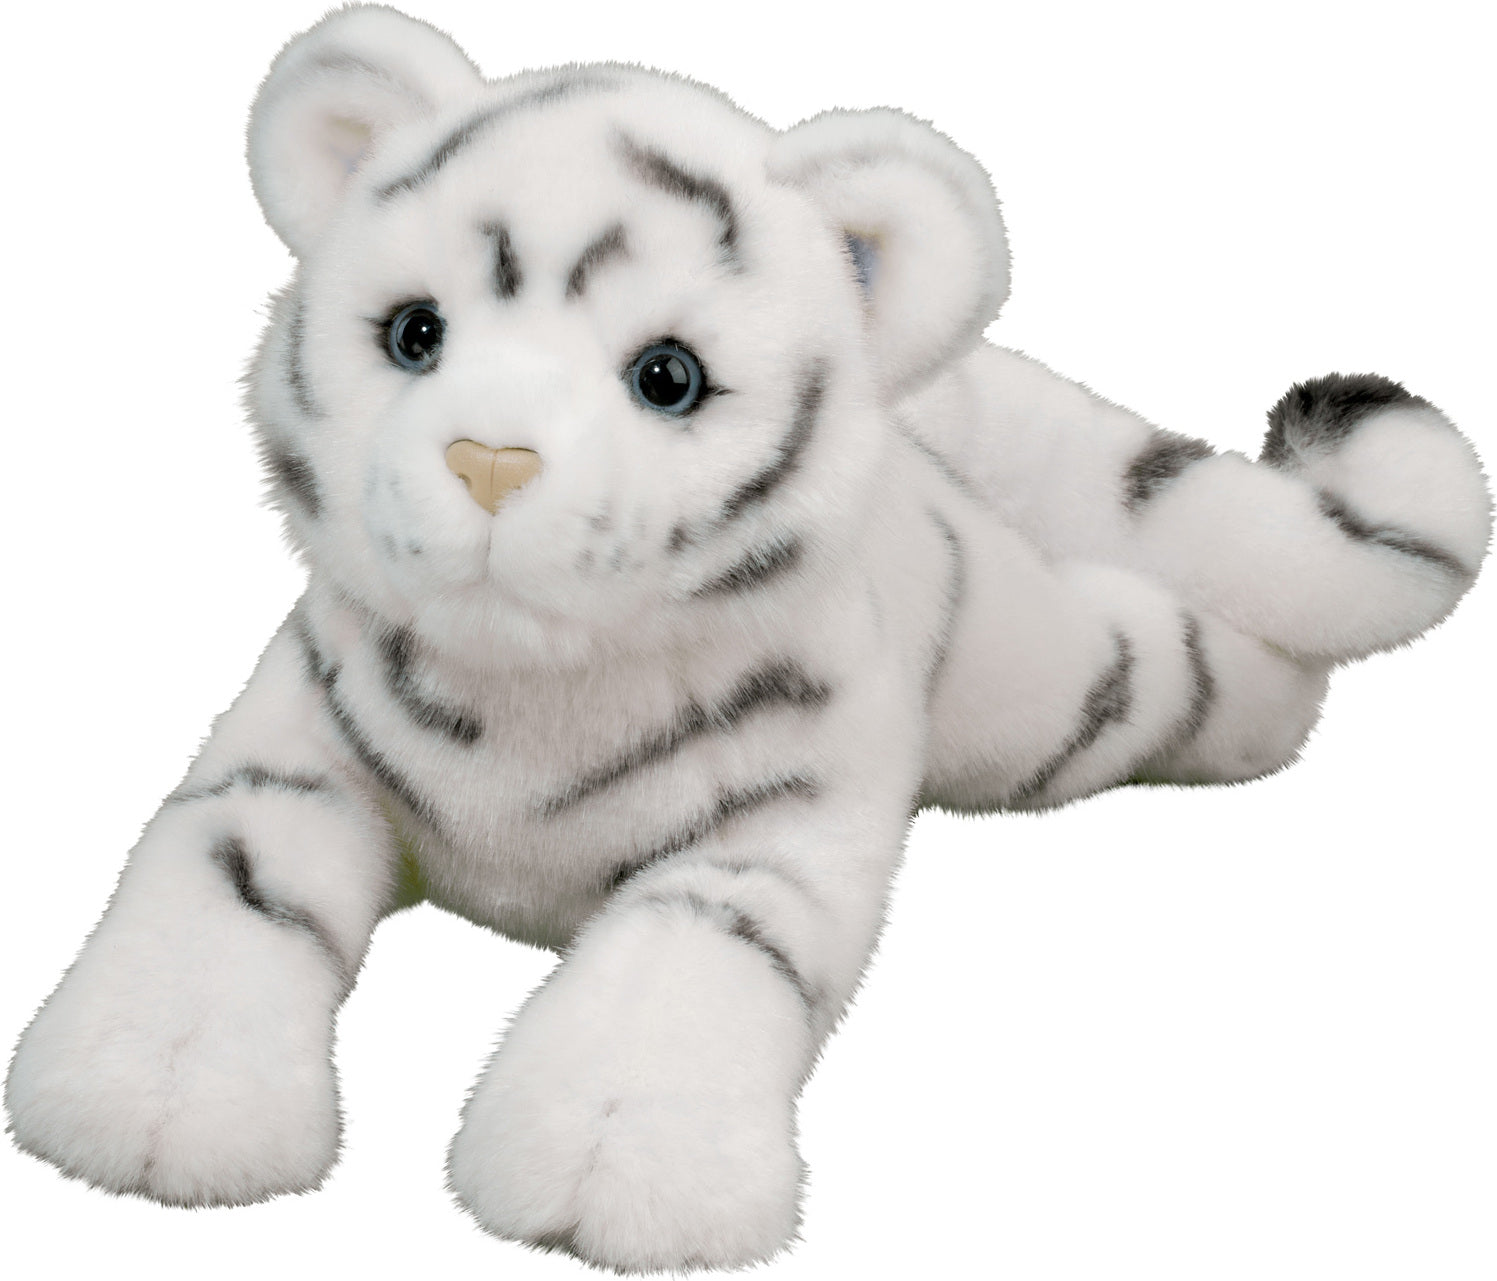 Zahara Dlux White Tiger